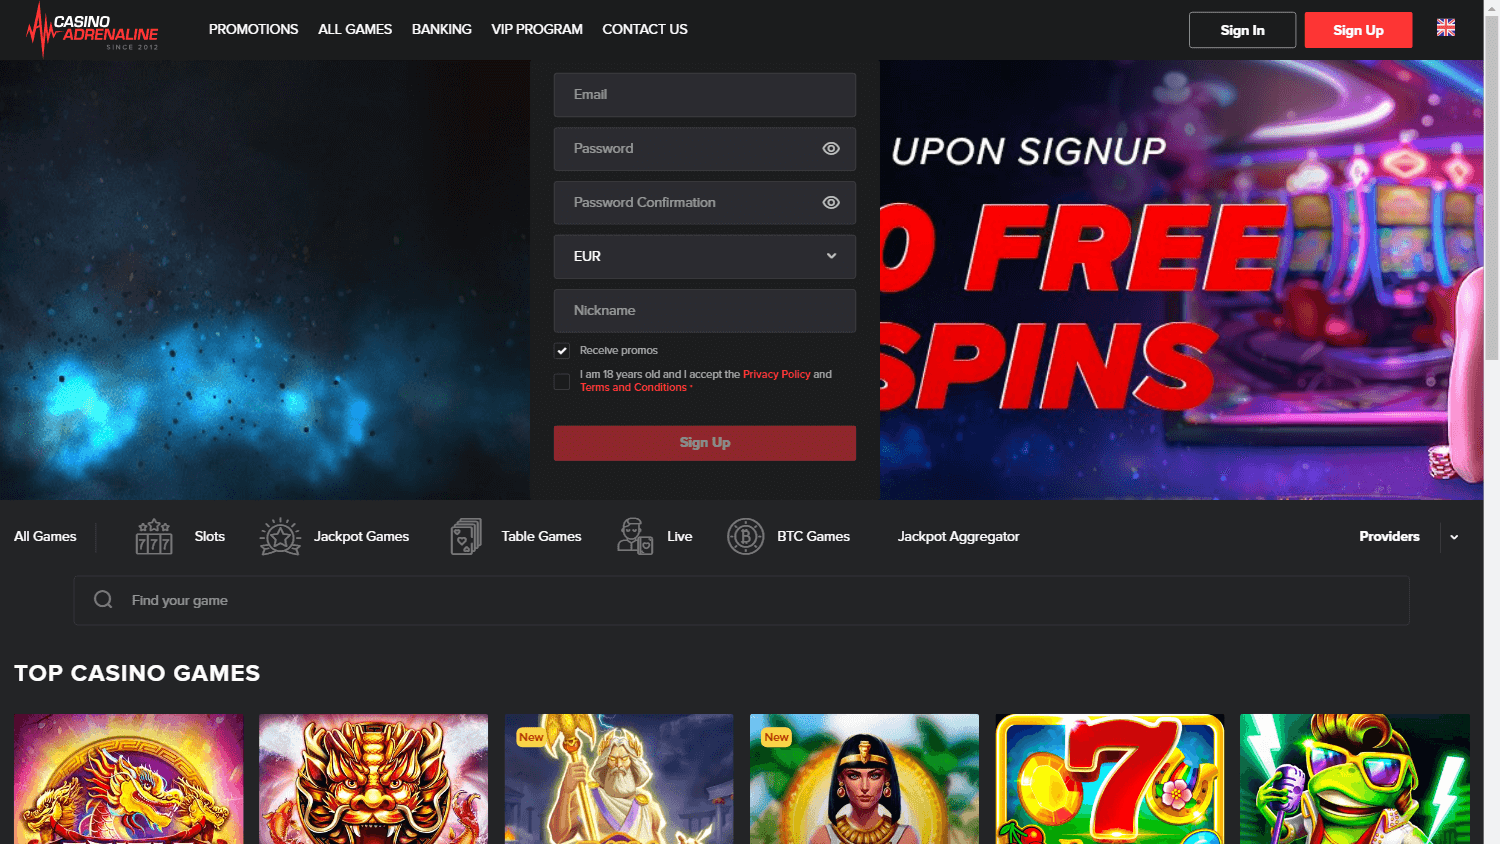 casino_adrenaline_homepage_desktop